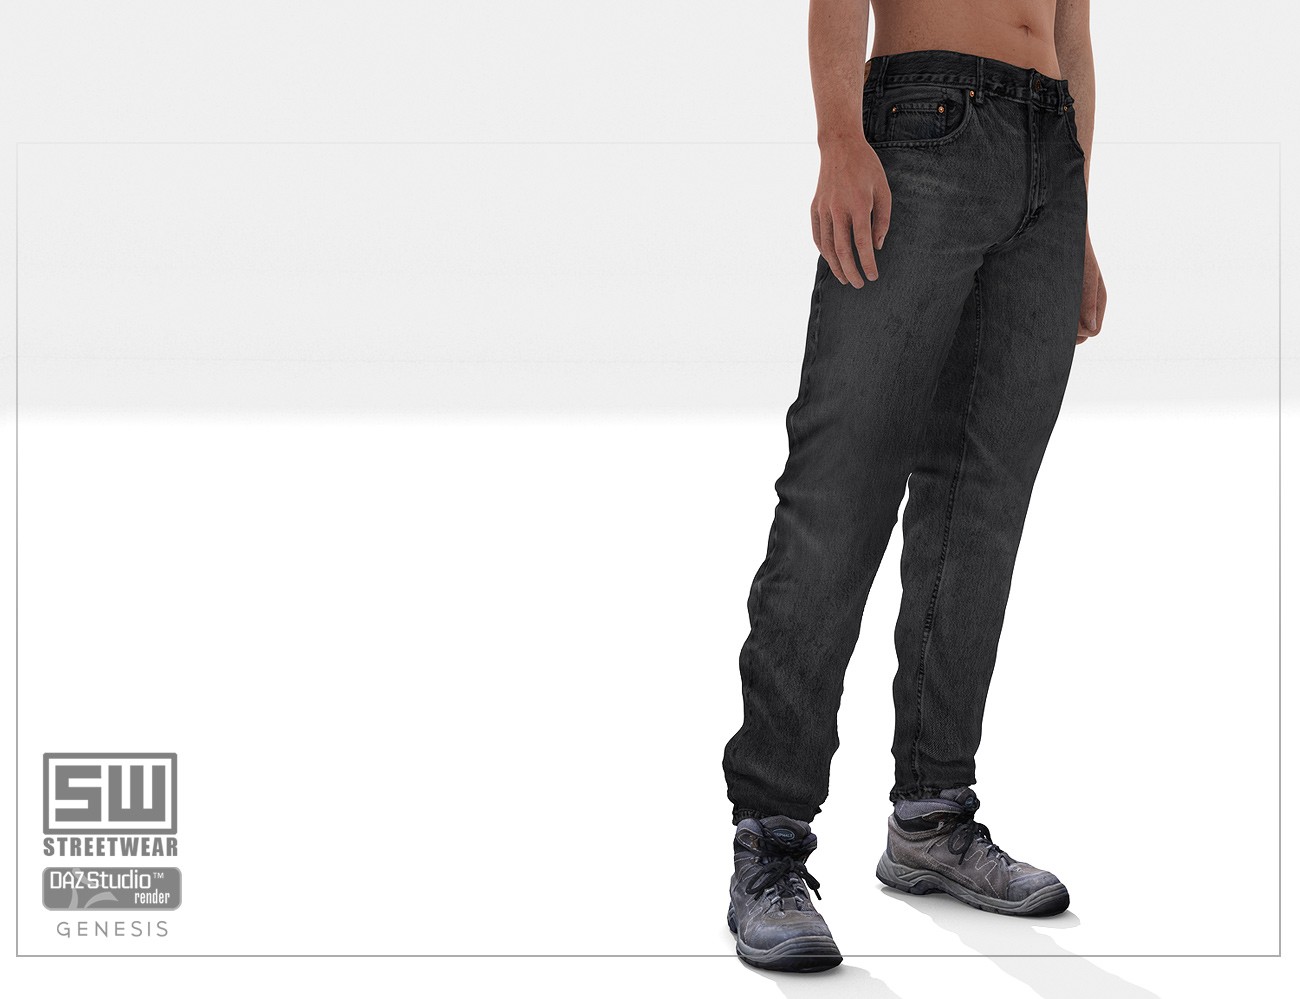 Download DAZ Studio 3 for FREE!: DAZ 3D - StreetWear : Jeans For Genesis